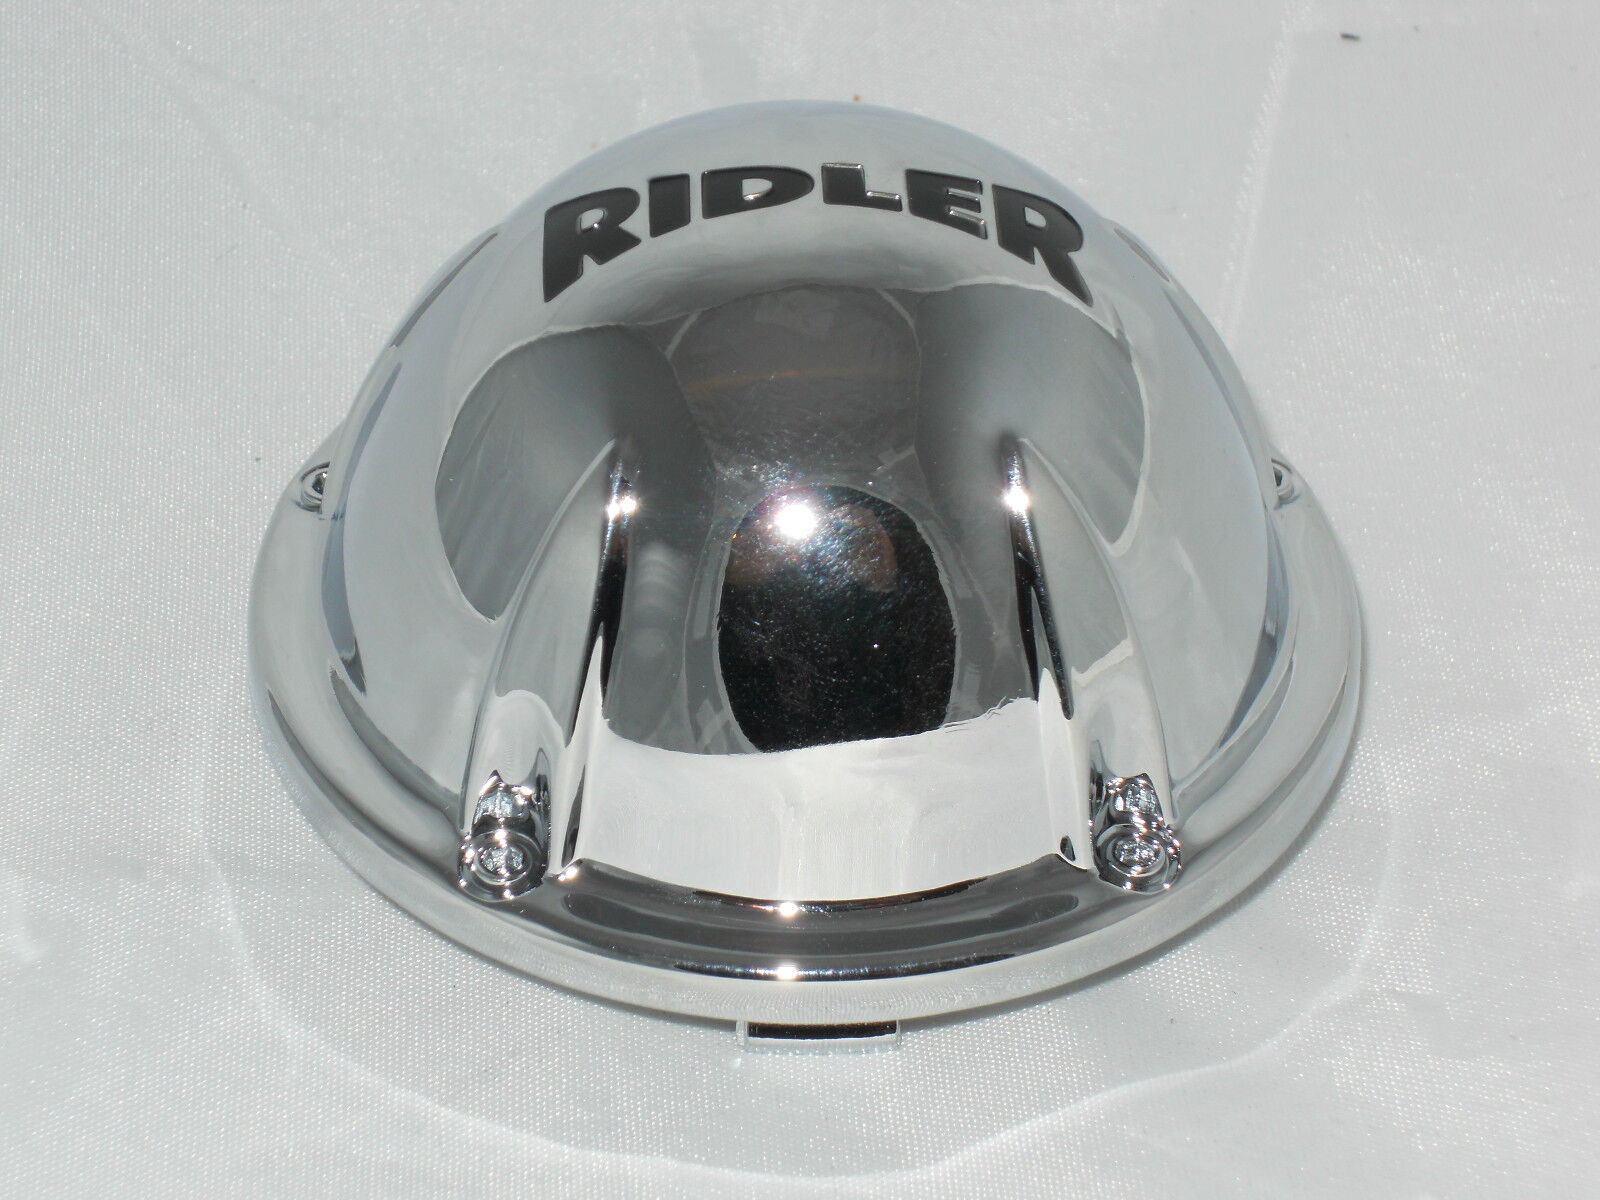 RIDLER 695 WHEEL RIM CENTER CAP 57492085F-1 LG1011-16 C10695C CHROME SNAP IN